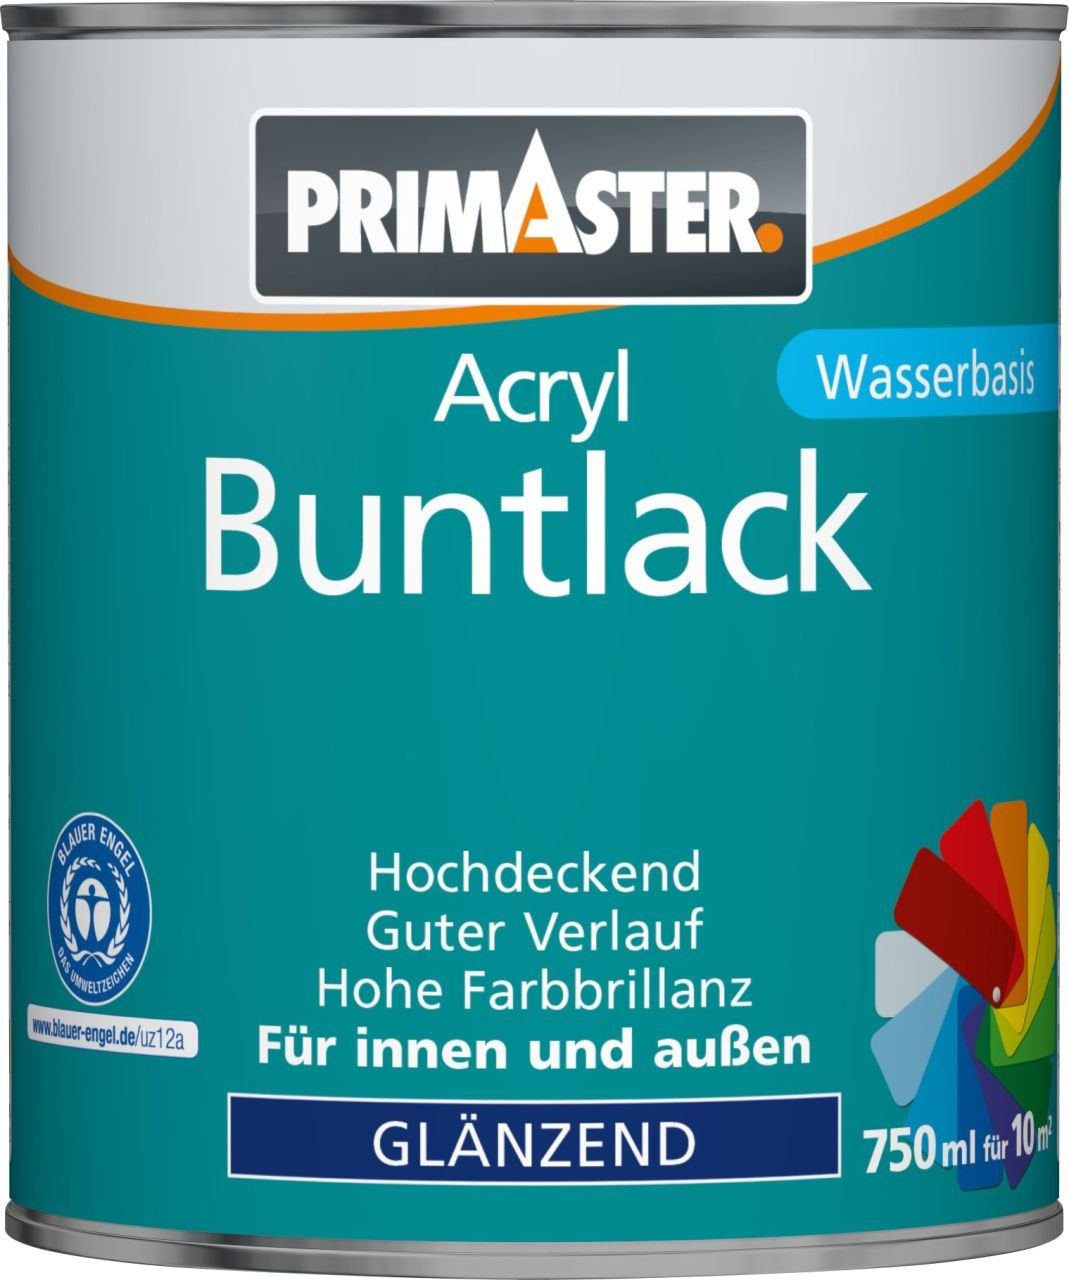 Primaster Acryl-Buntlack Primaster Buntlack Acryl 6005 750 ml moosgrün RAL